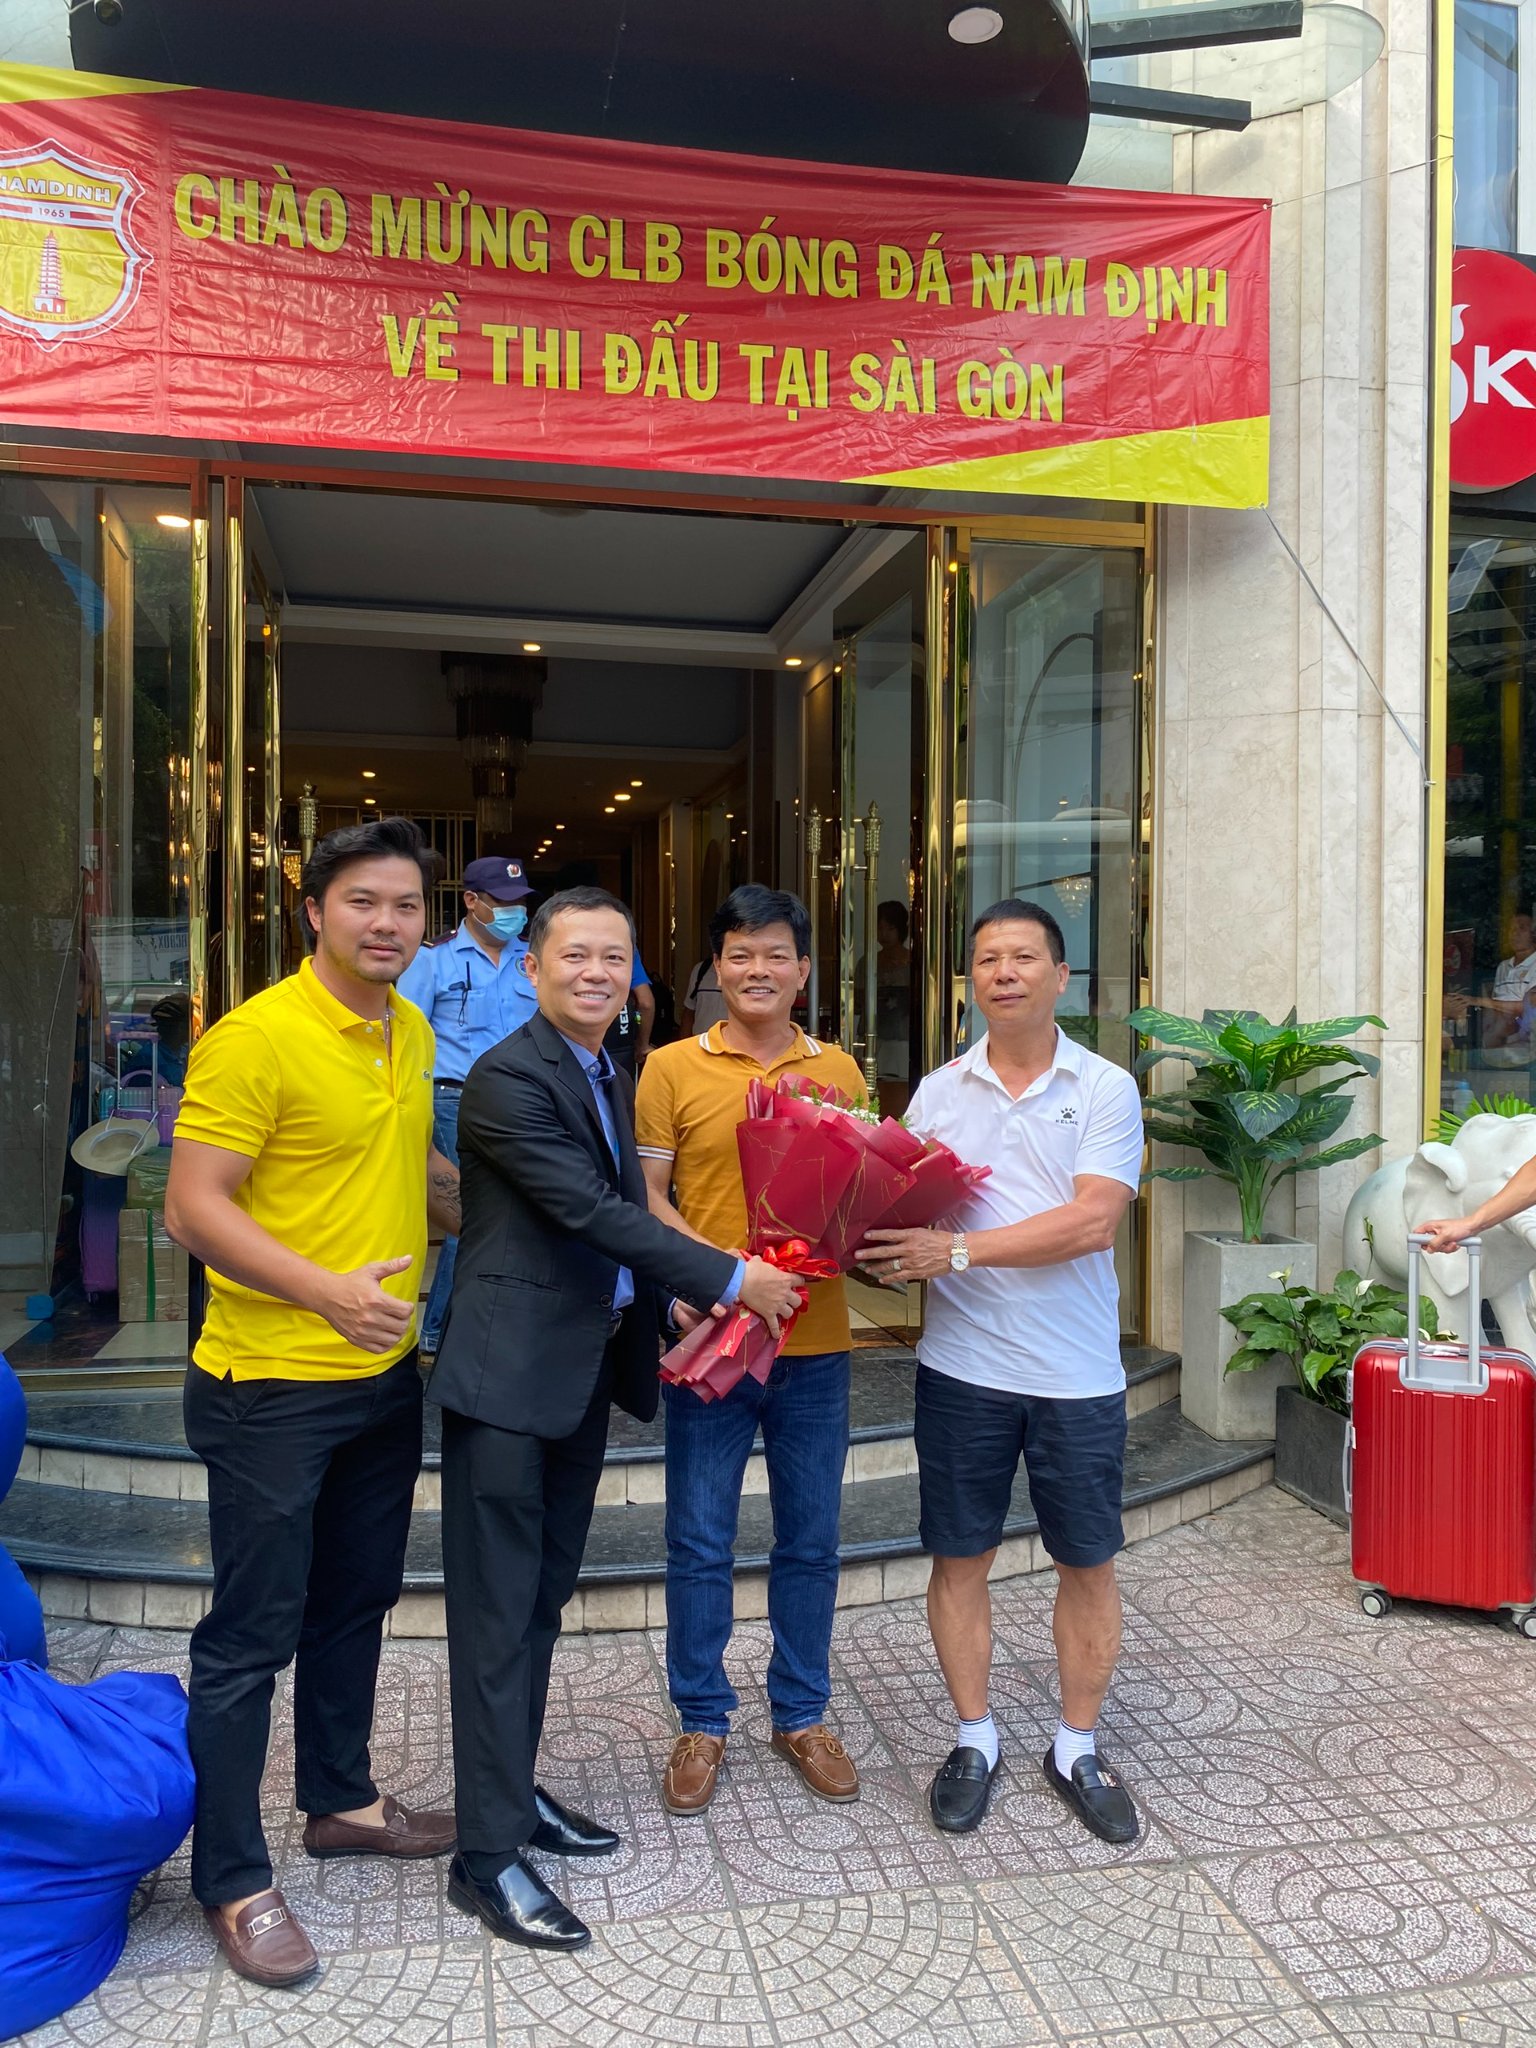 Chào mừng câu lạc bộ bóng đá Nam Định về thi đấu tại SAIGON